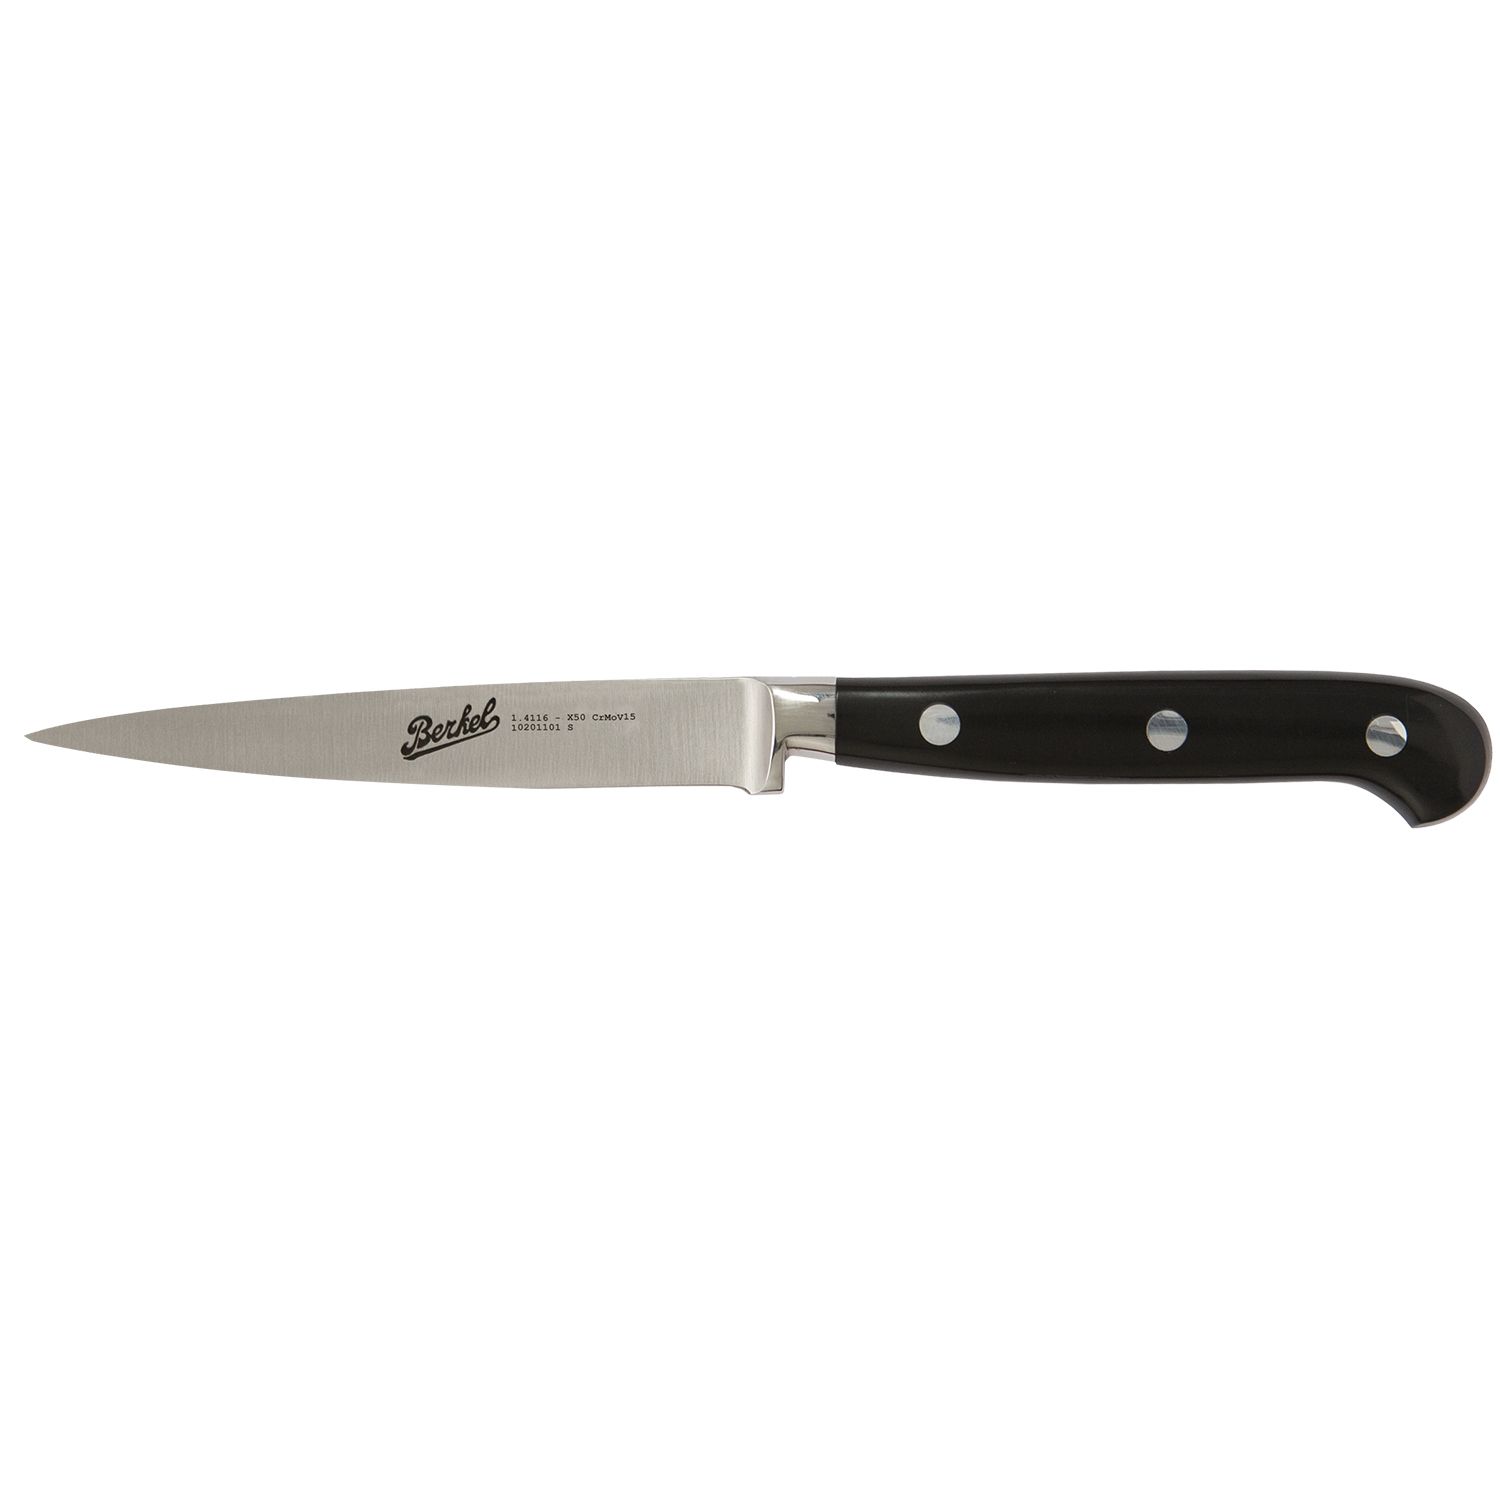 Paring knife cm.11  Stainless Steel Berkel Adhoc Handle Glossy Black Resin